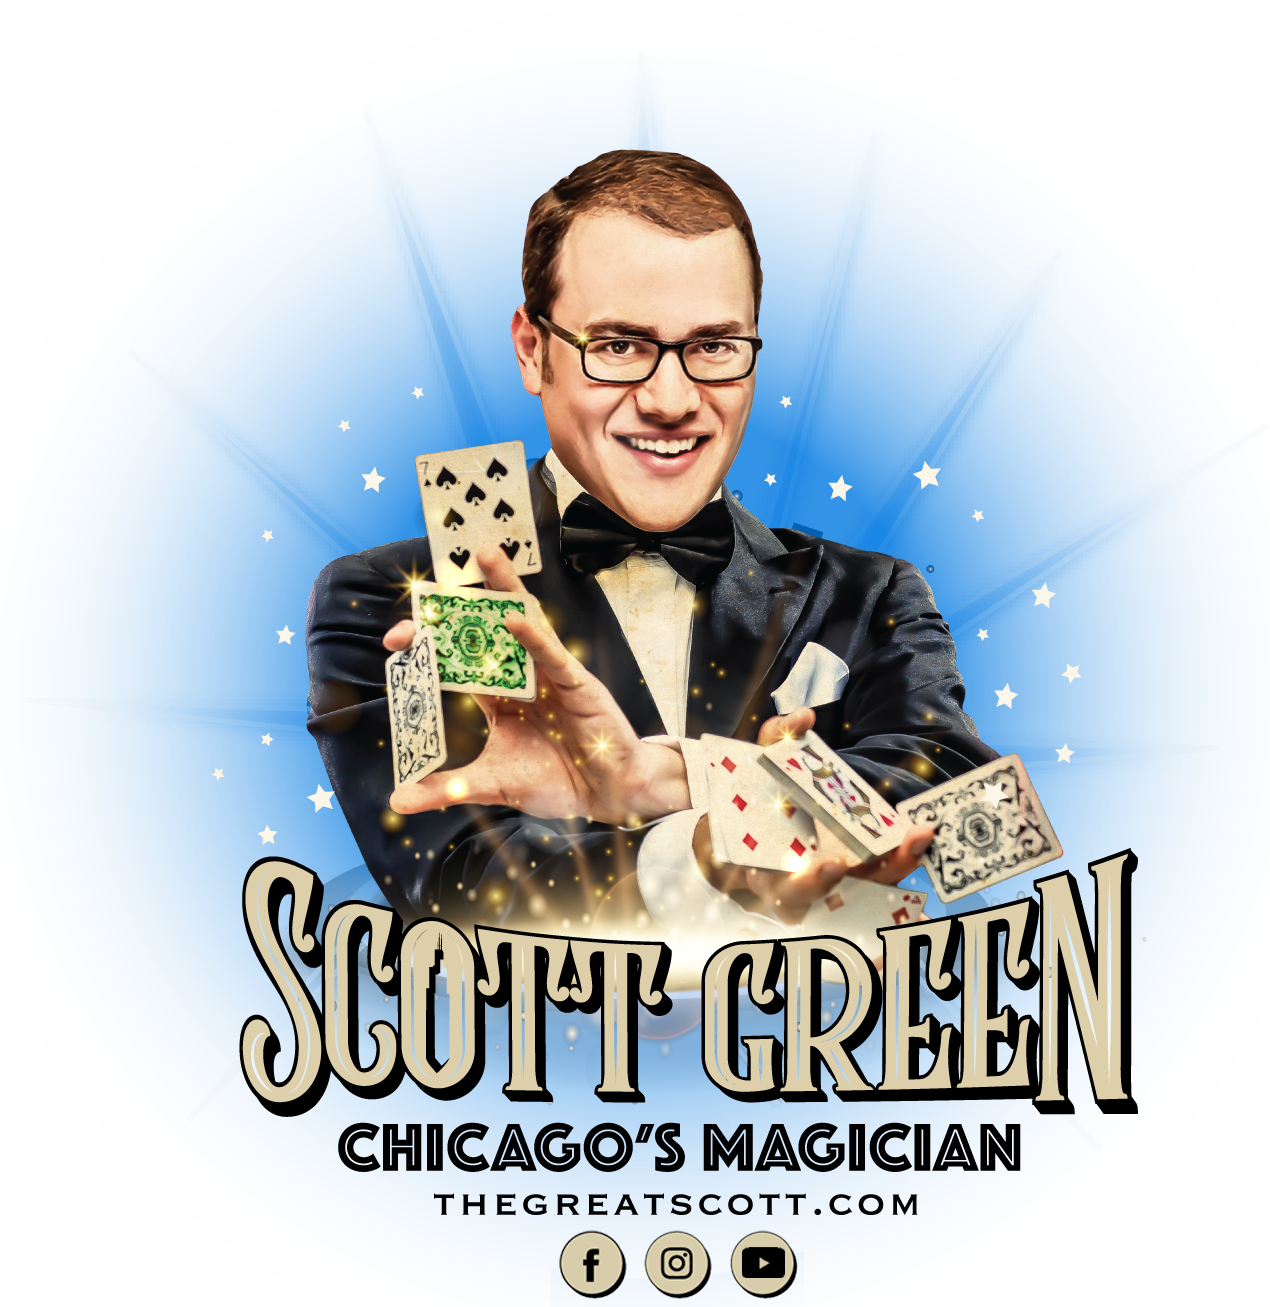 Scott Green Chicago's Magician